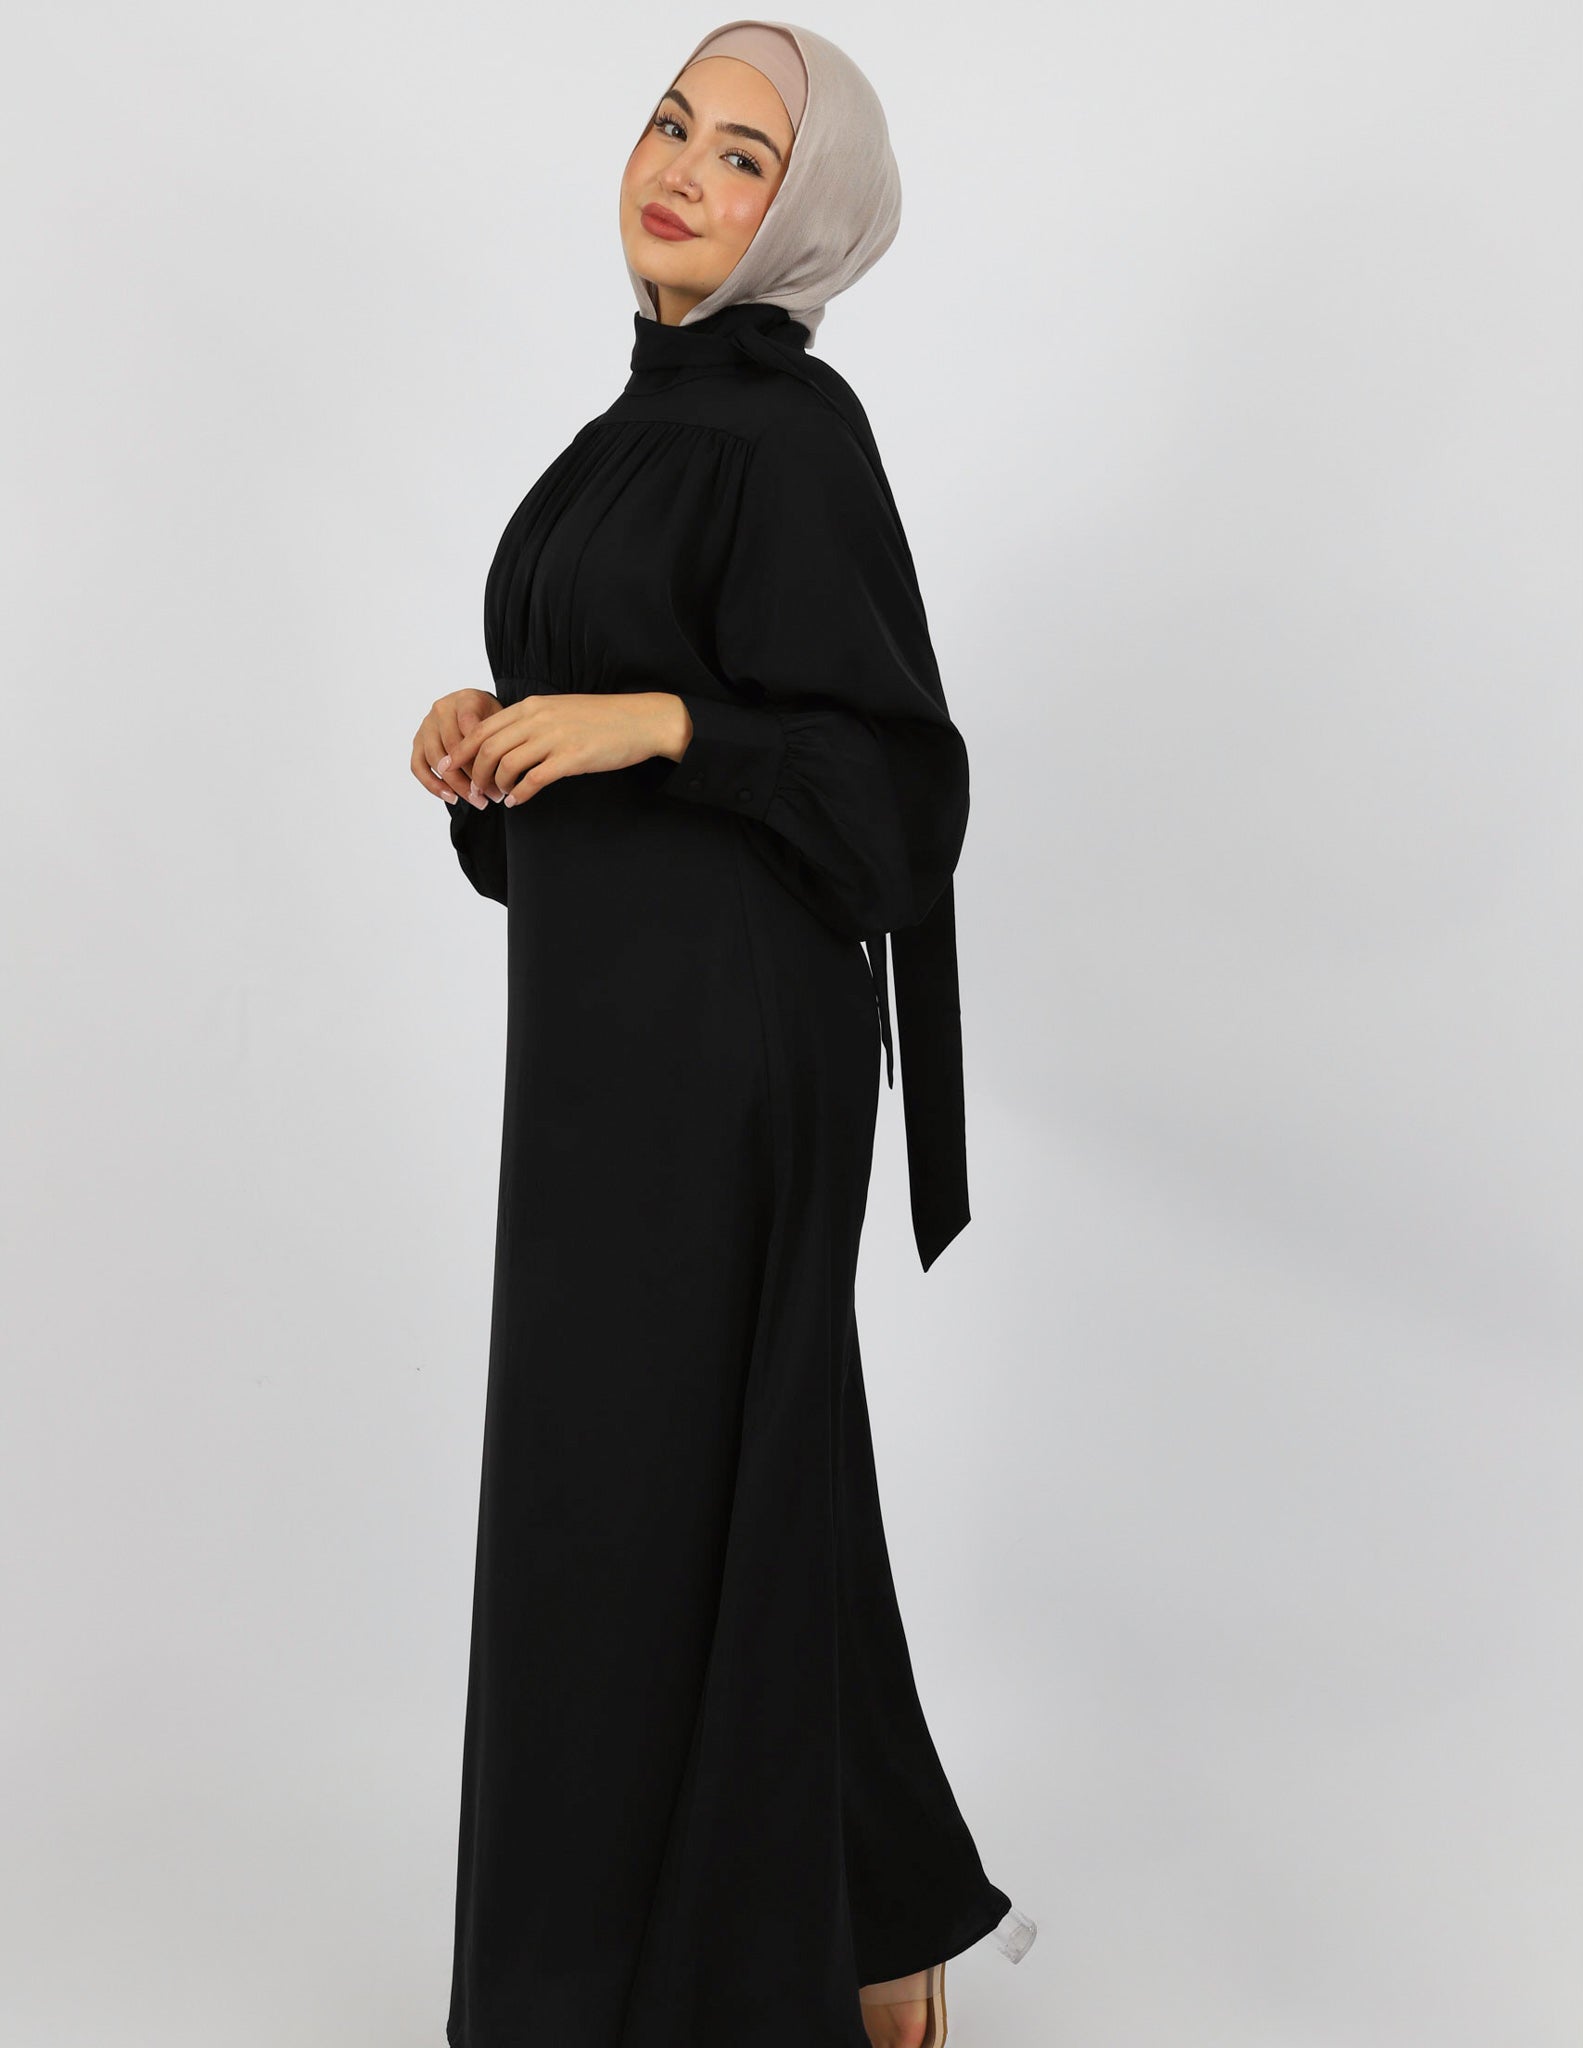 M7711Black-dress-abaya